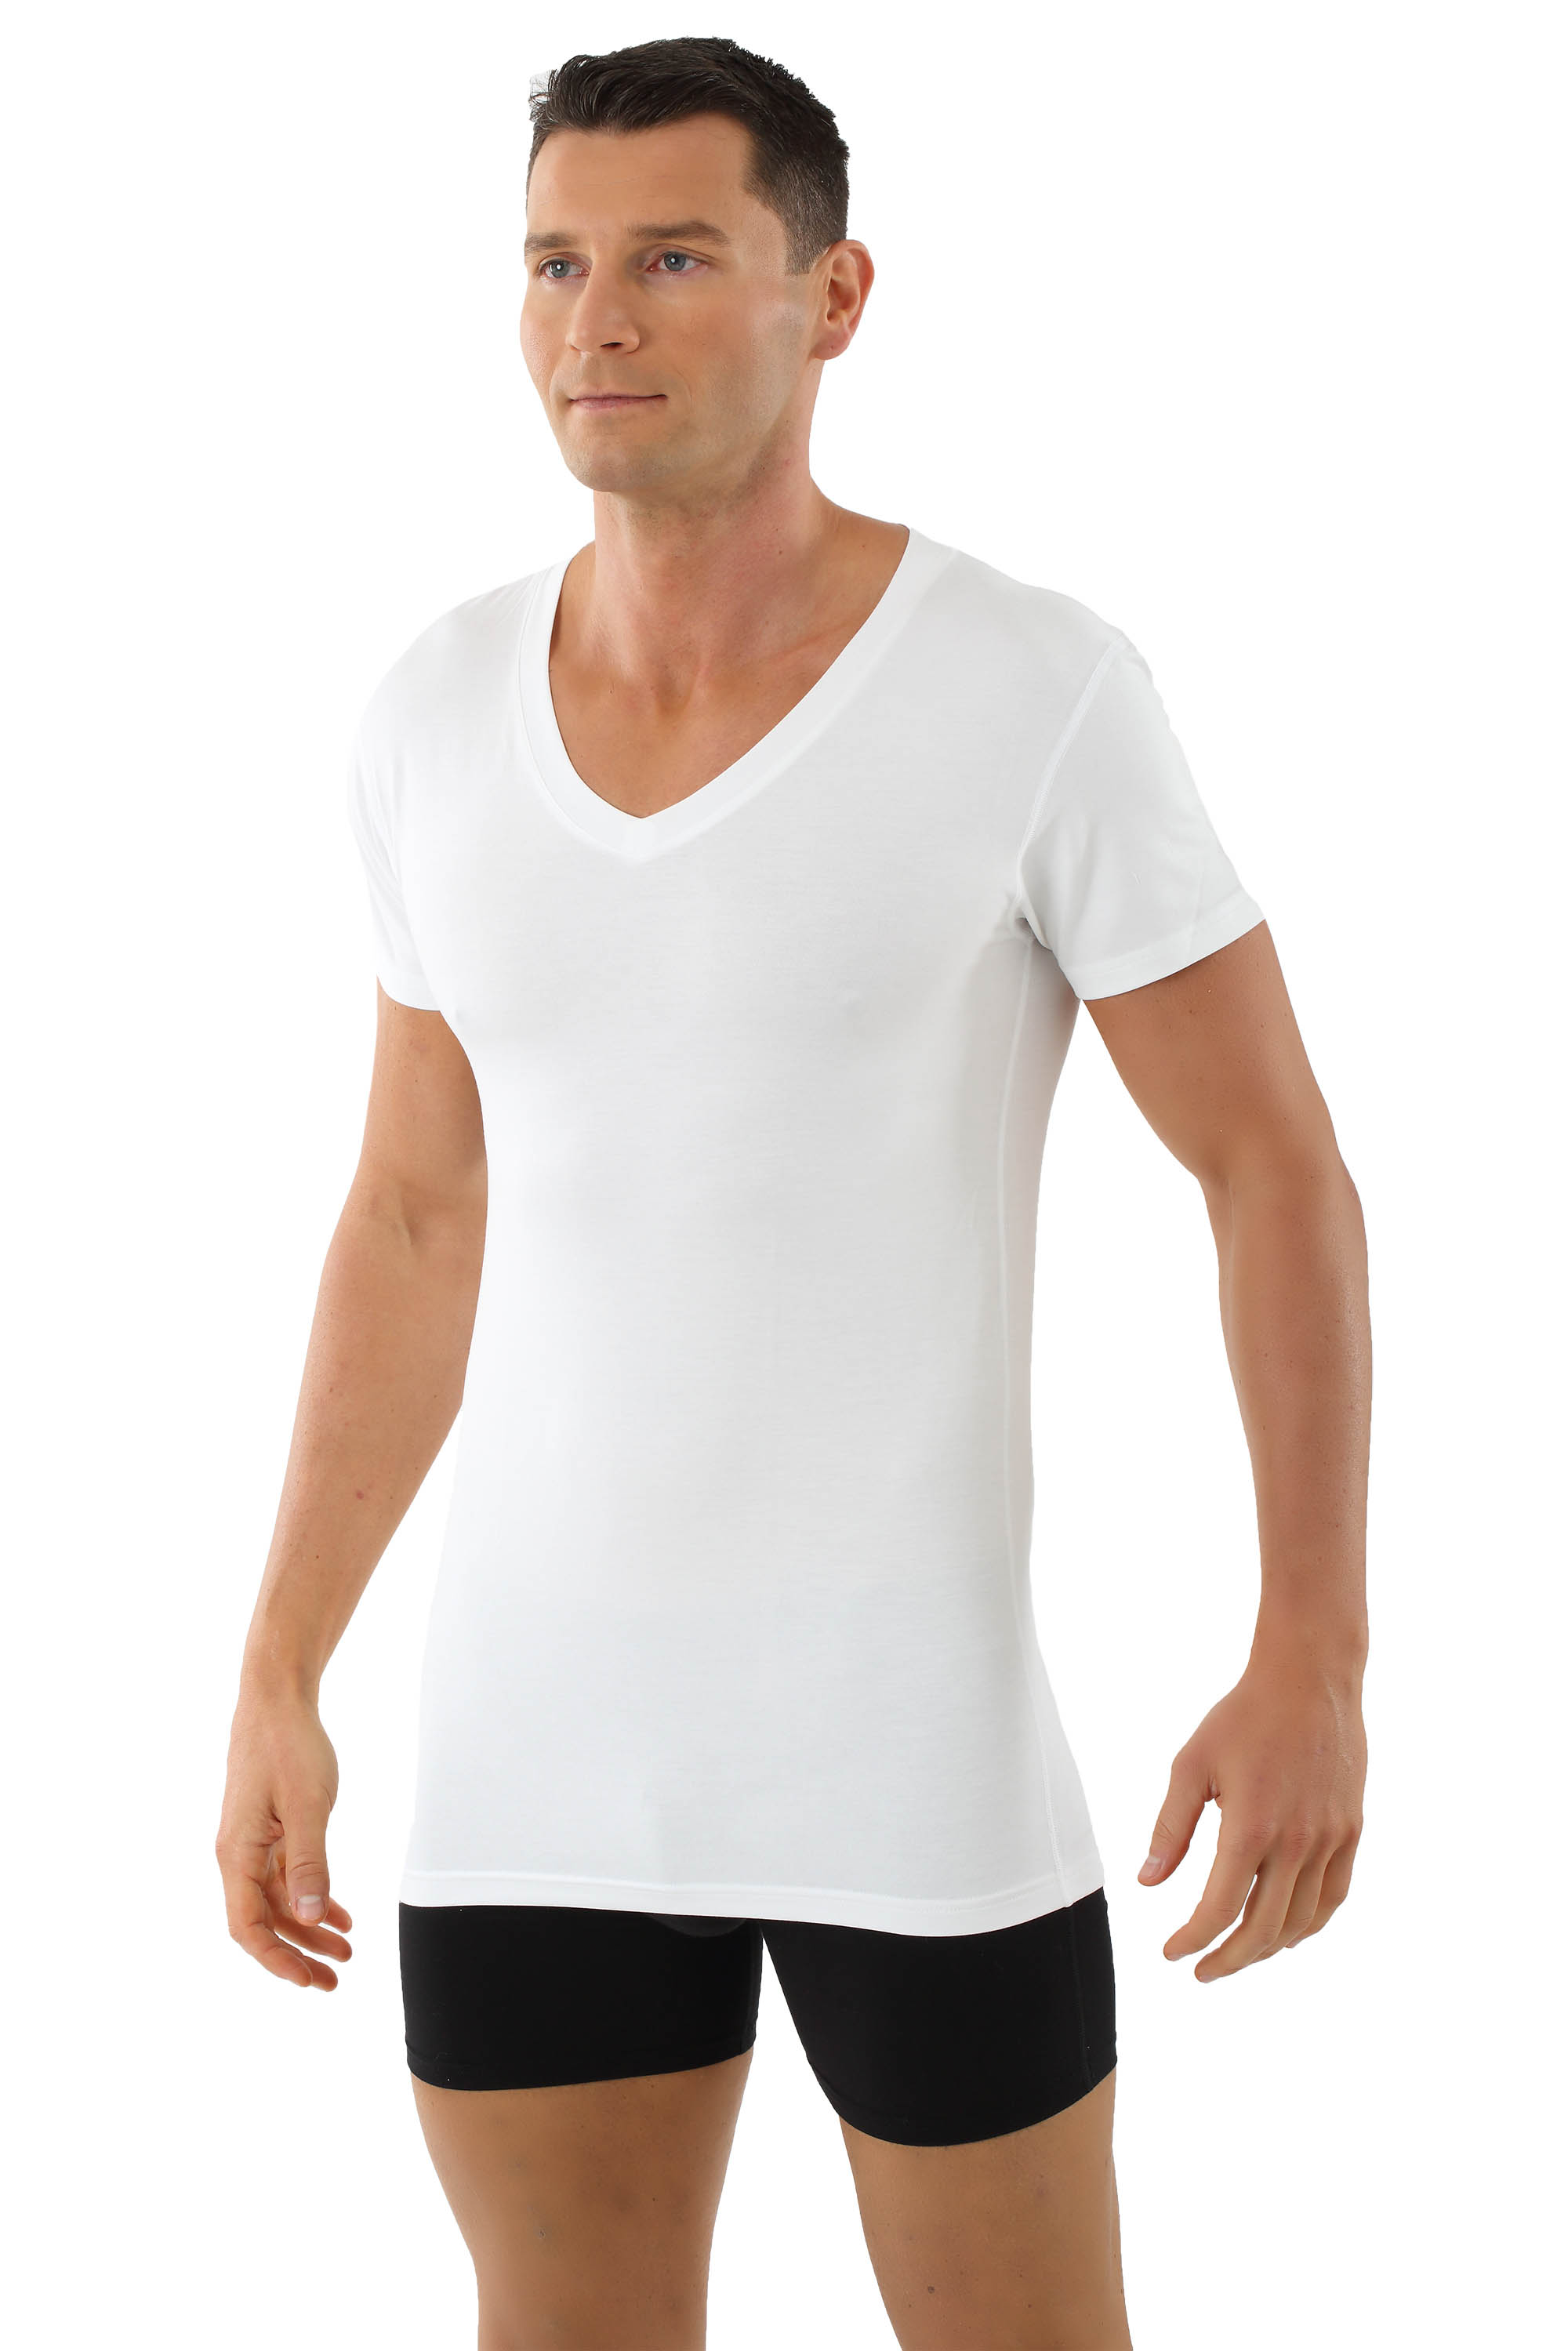 Men's microfiber undershirt Stuttgart with flat v-neck short sleeves white